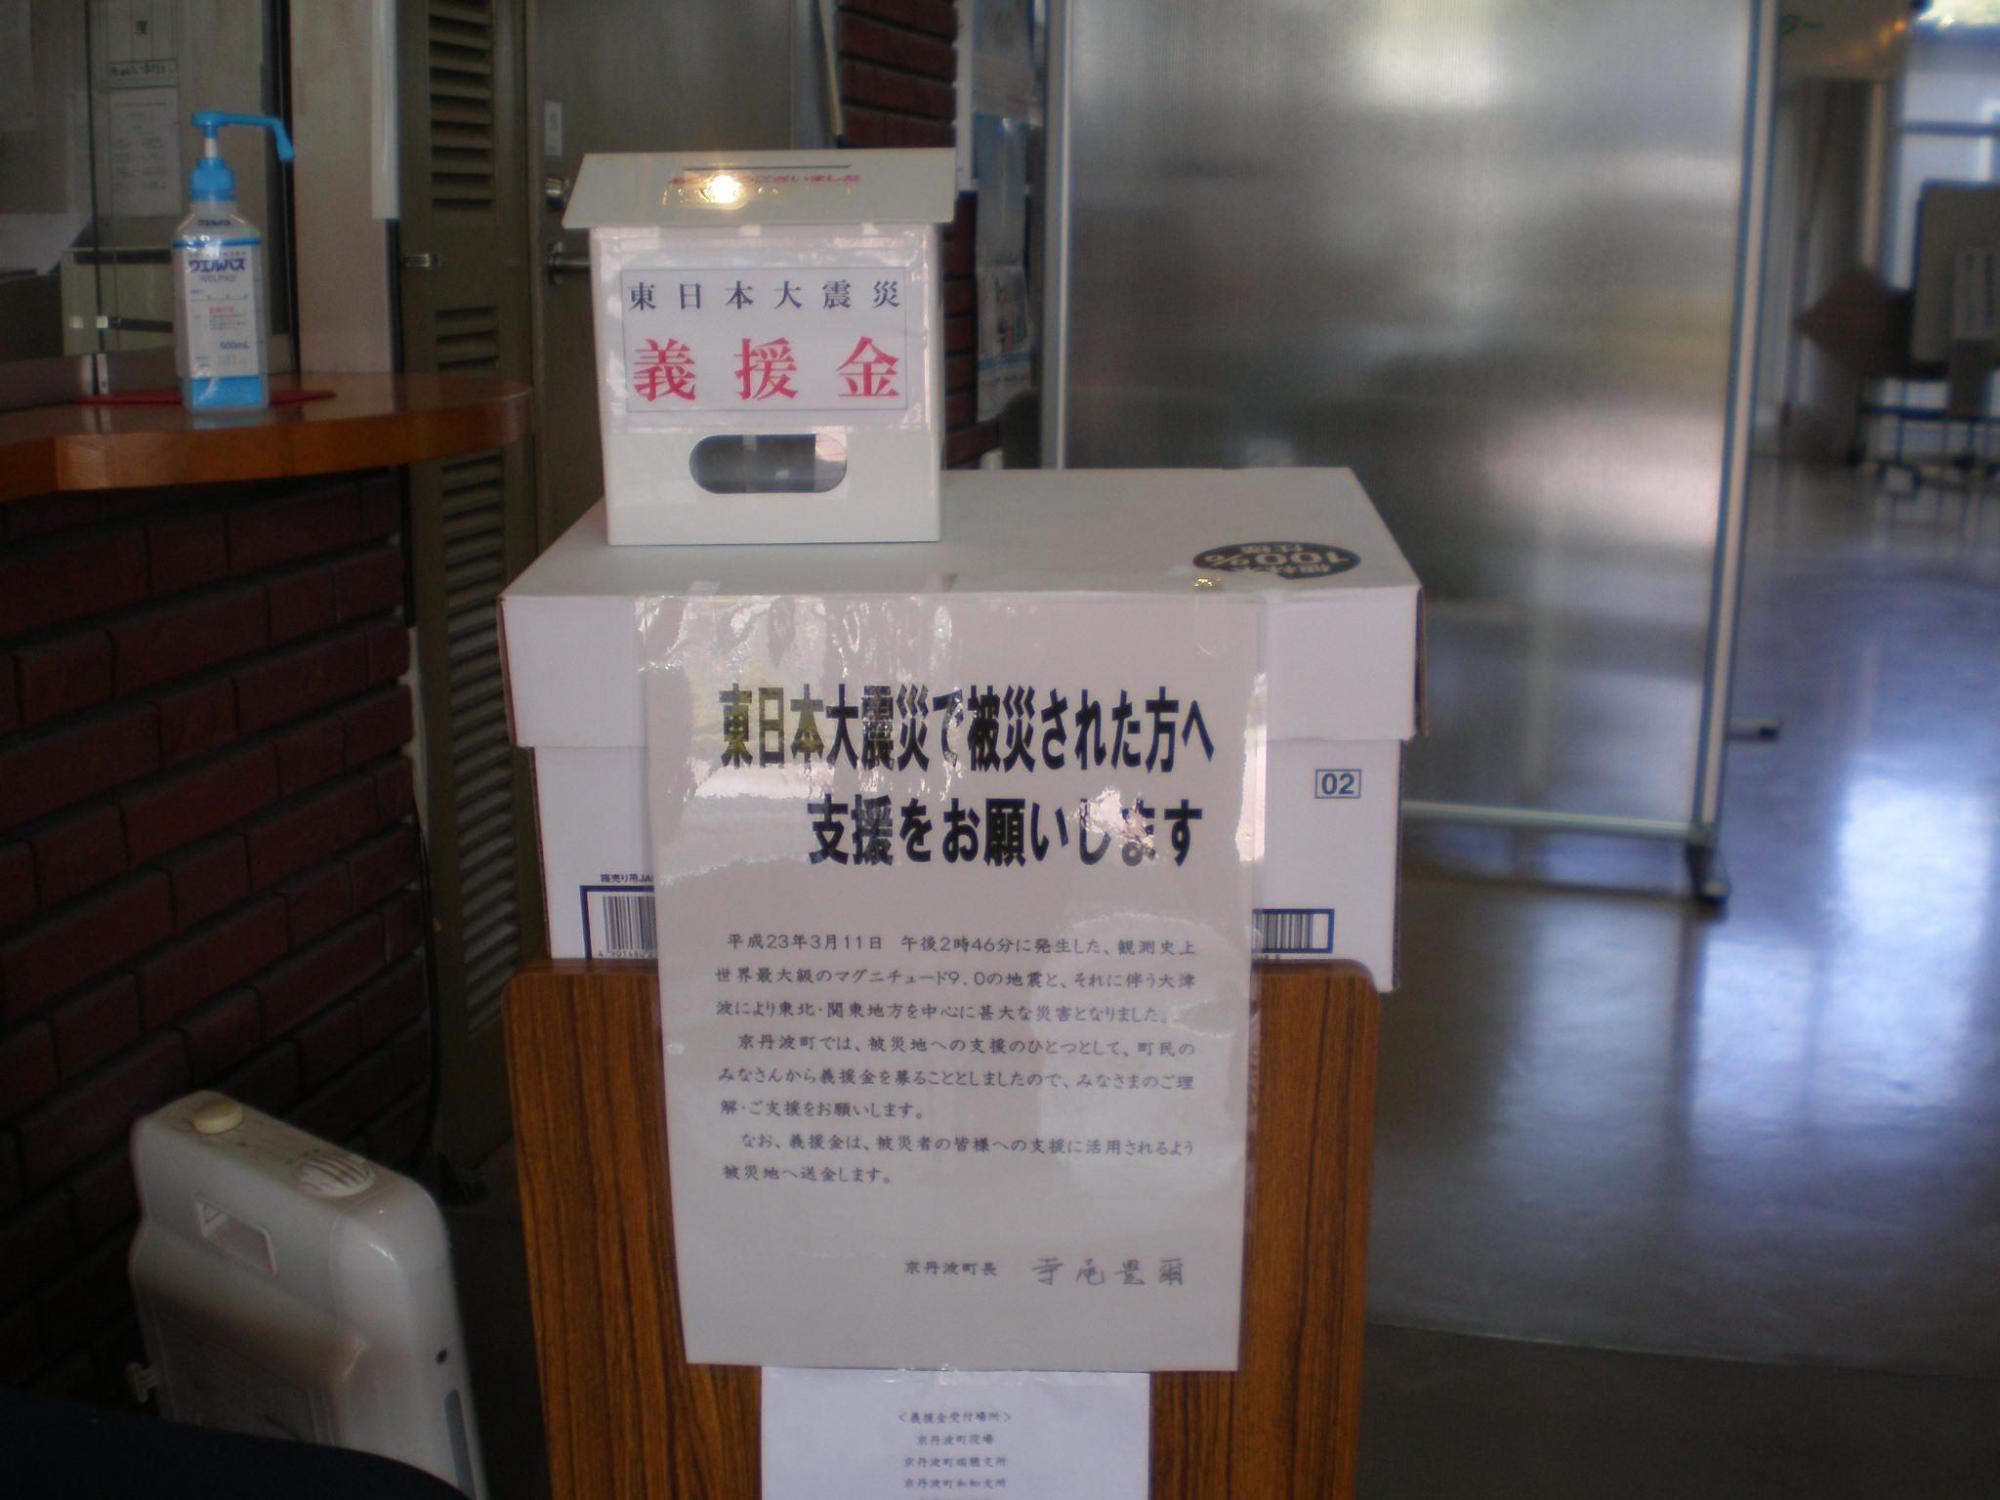 「東日本大震災で被災された方へ支援をお願いします」と書かれた段ボールの募金箱の写真